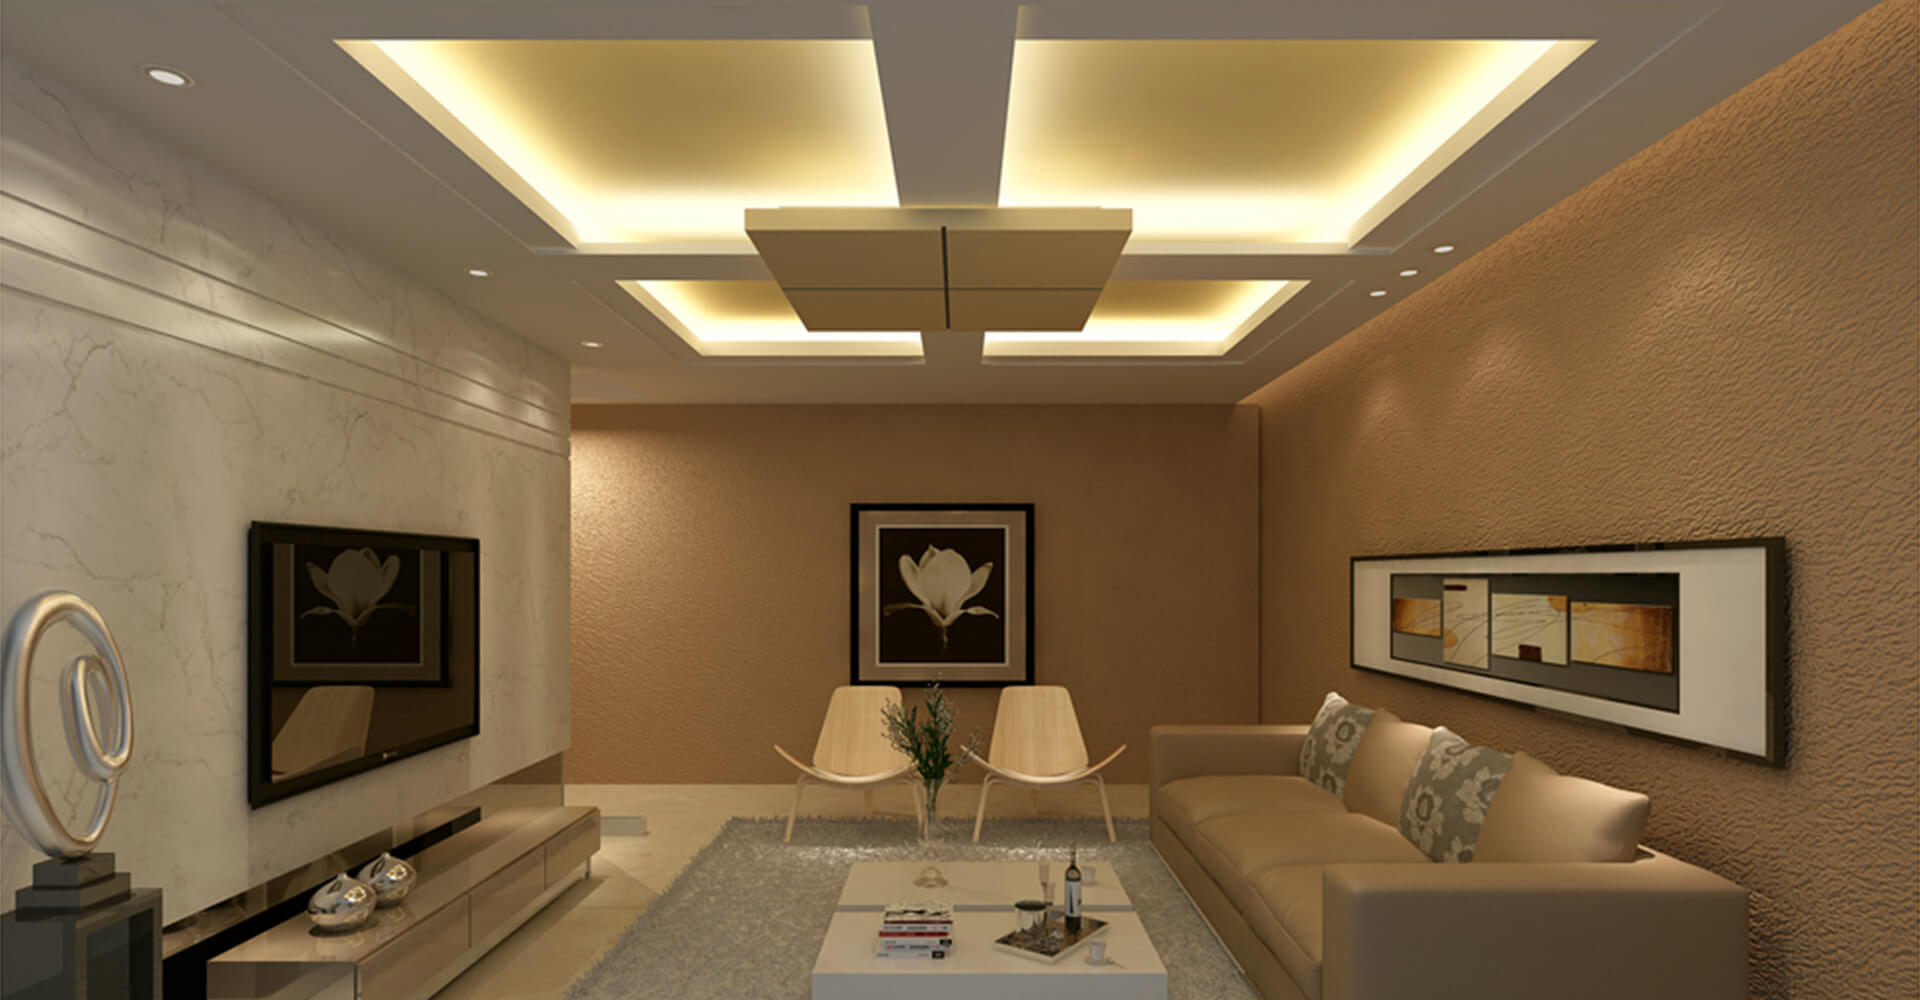 Gypsum Ceiling Design 5